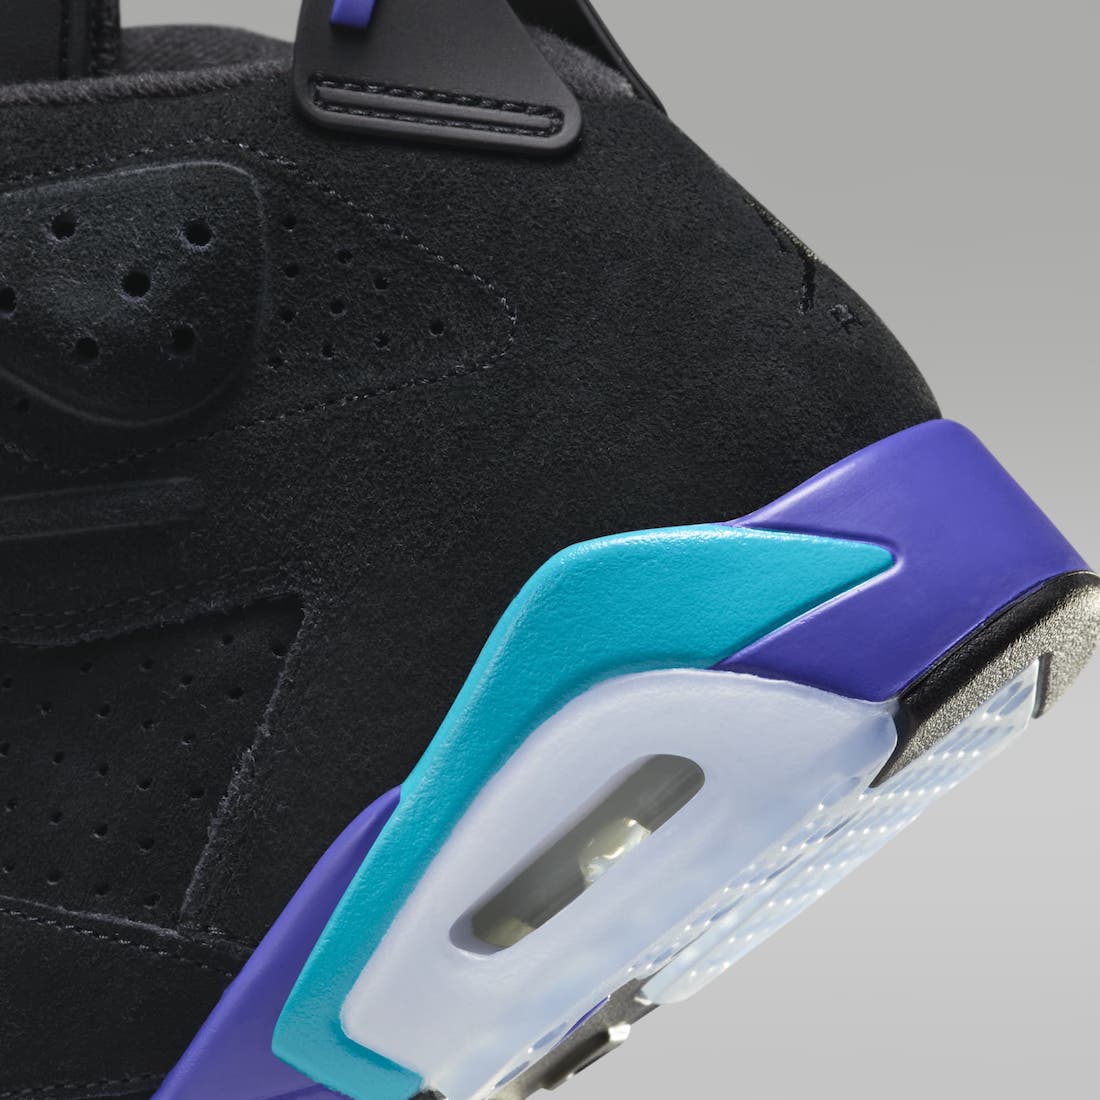 Official Look At The Air Jordan 6 Retro “Aqua”